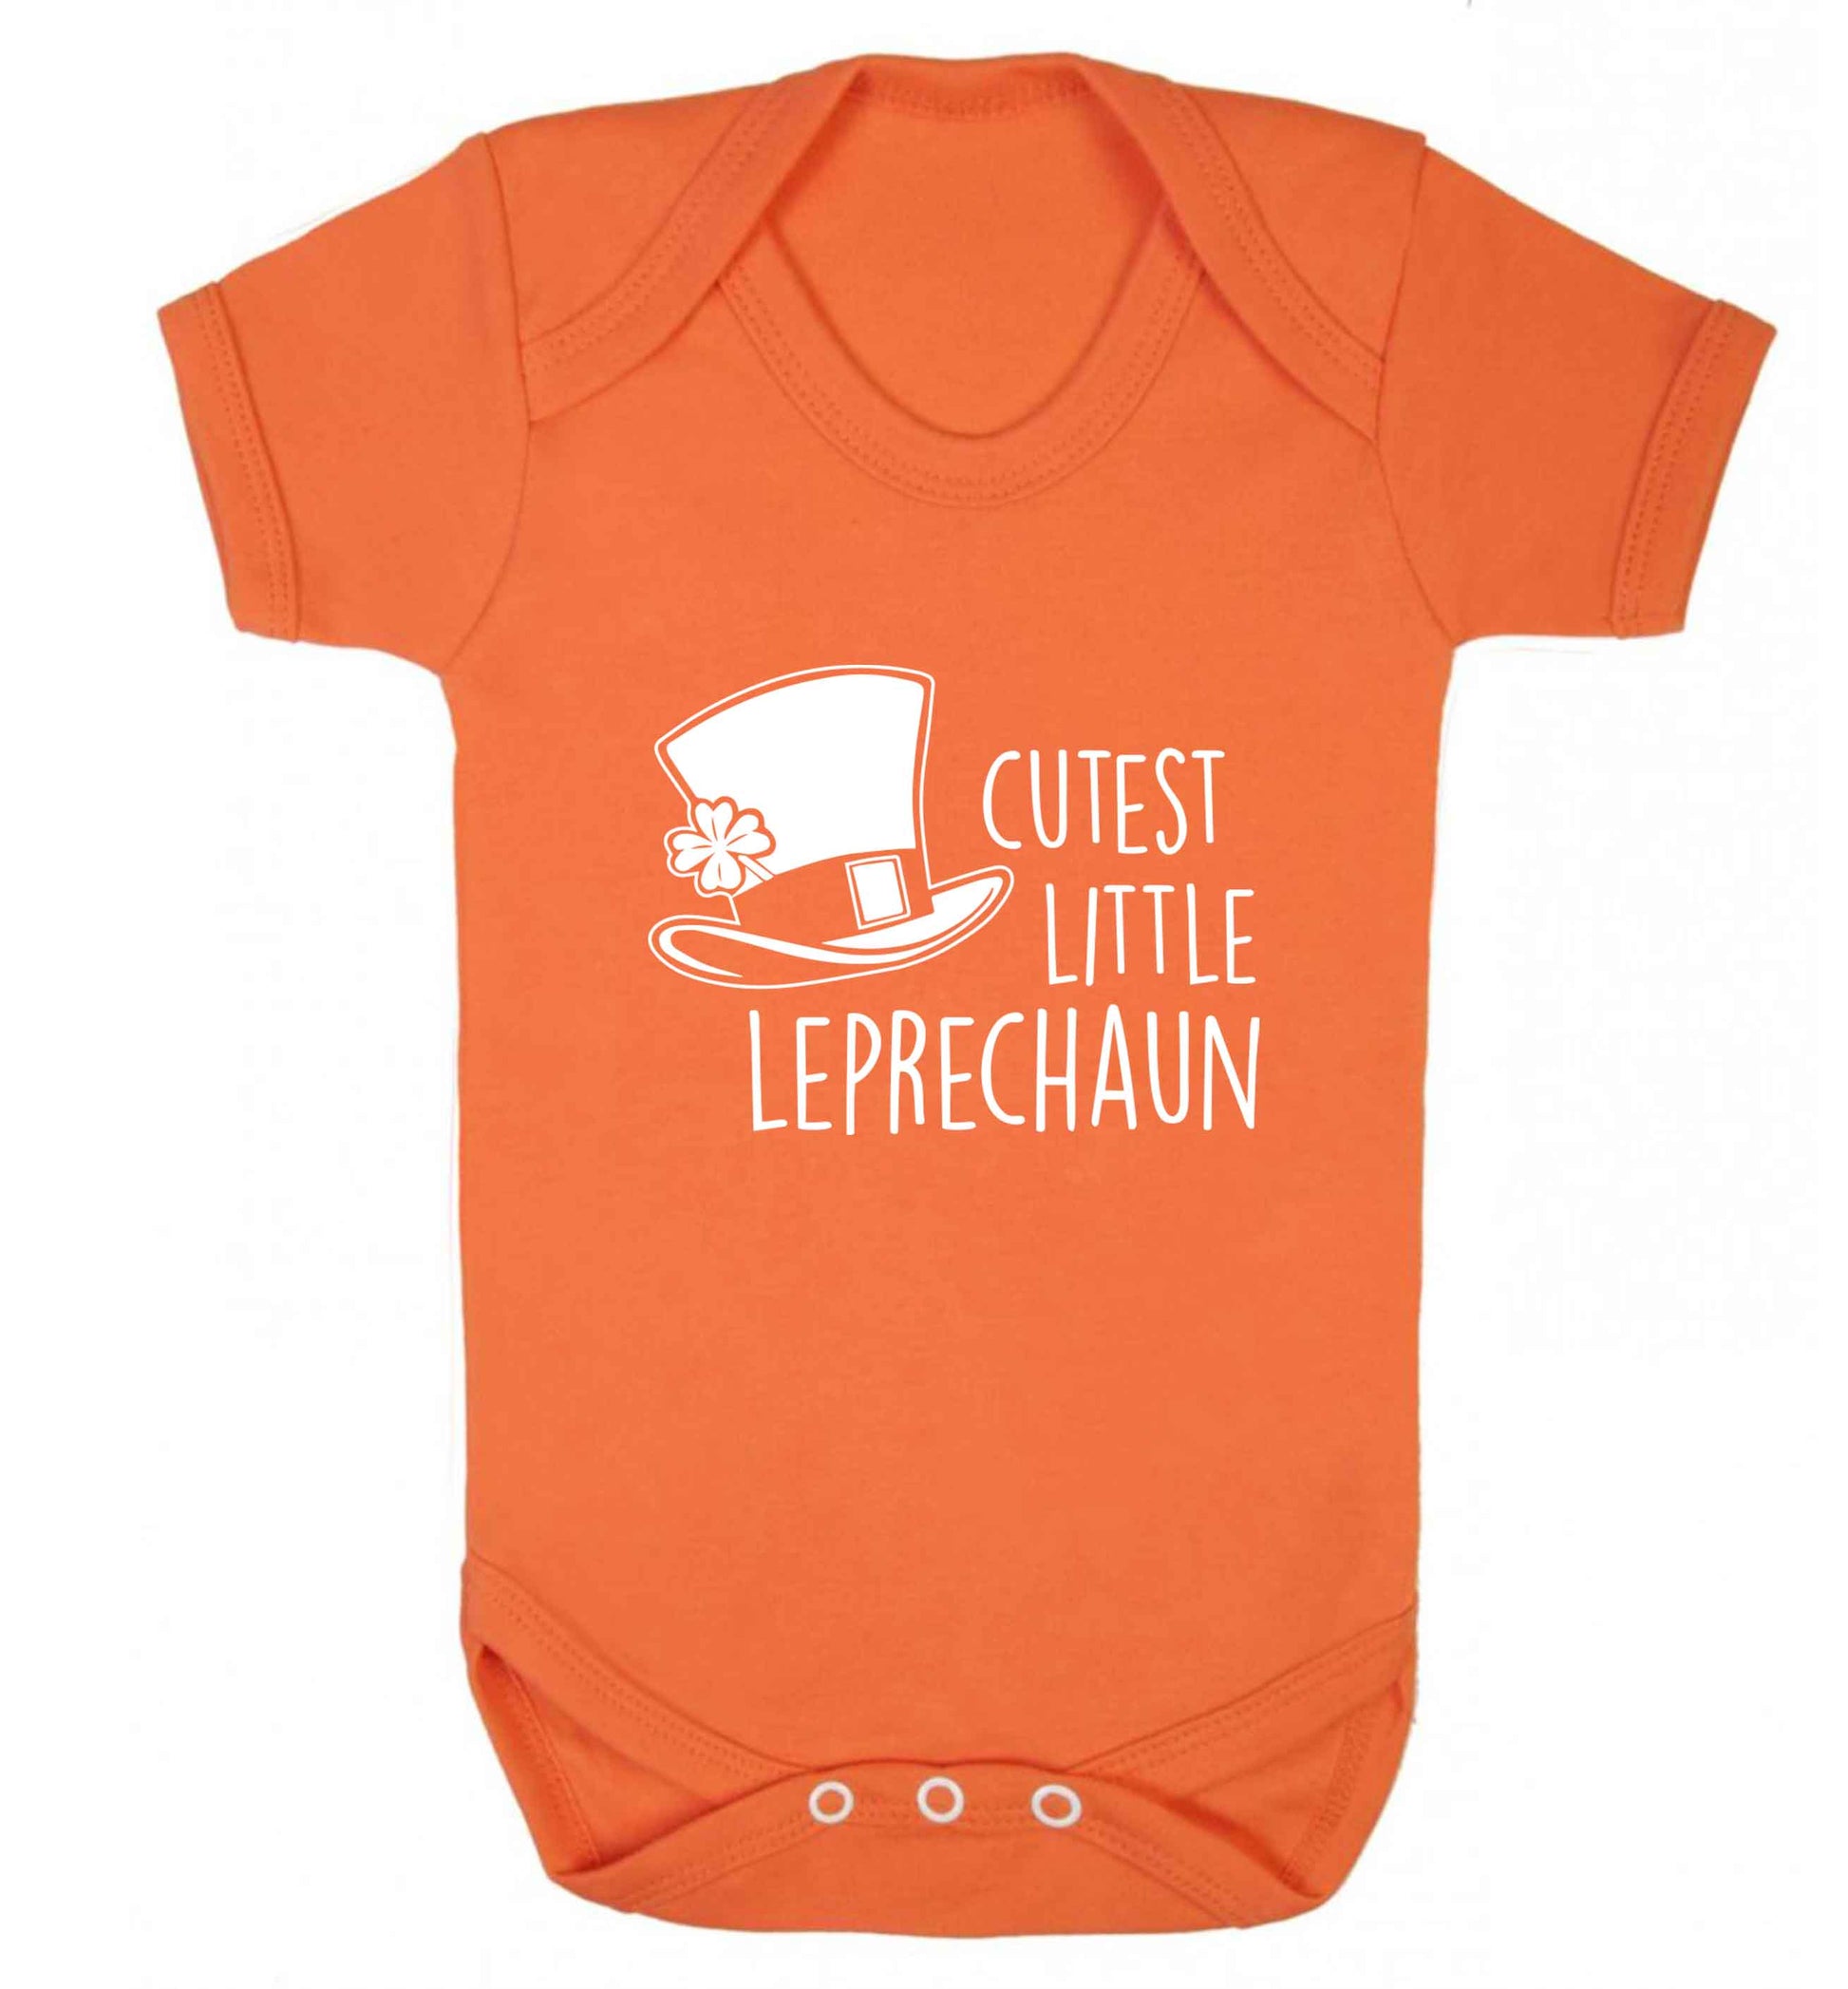 Cutest little leprechaun baby vest orange 18-24 months